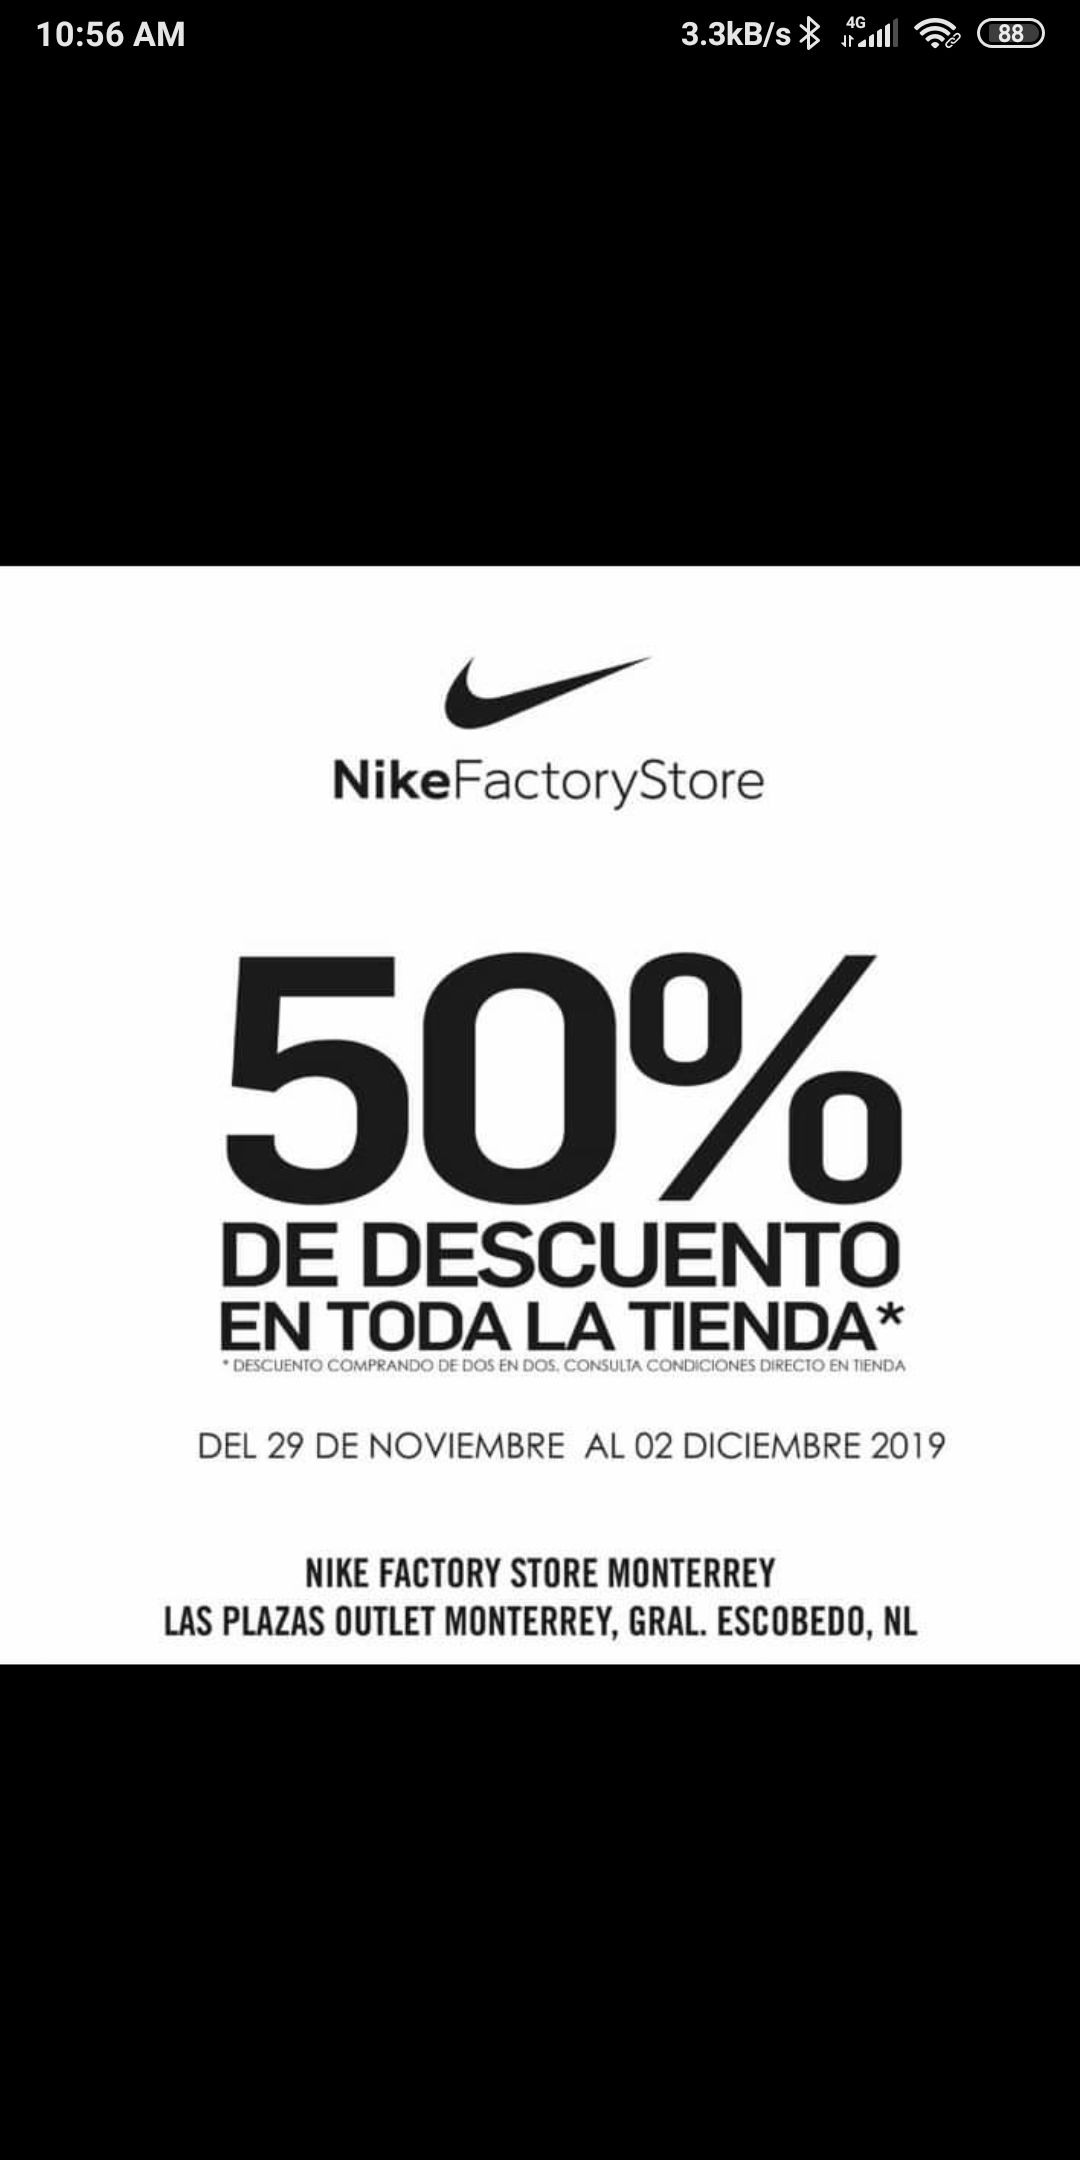 Nike Store Promociones 2019 Deals - xevietnam.com